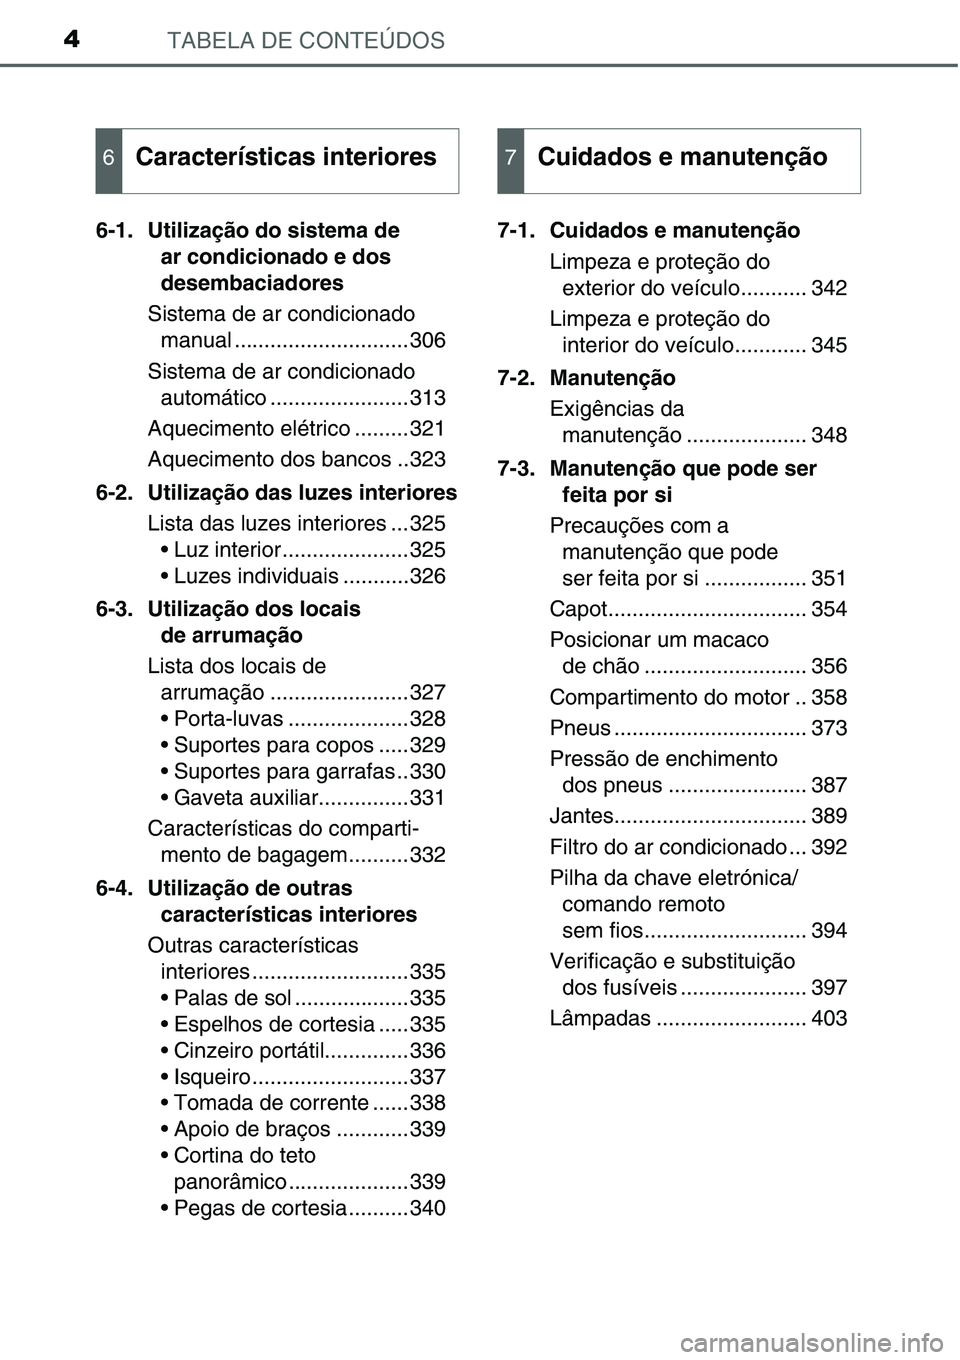 TOYOTA YARIS 2016  Manual de utilização (in Portuguese) TABELA DE CONTEÚDOS4
6-1. Utilização do sistema de 
ar condicionado e dos 
desembaciadores
Sistema de ar condicionado 
manual .............................306
Sistema de ar condicionado 
automátic